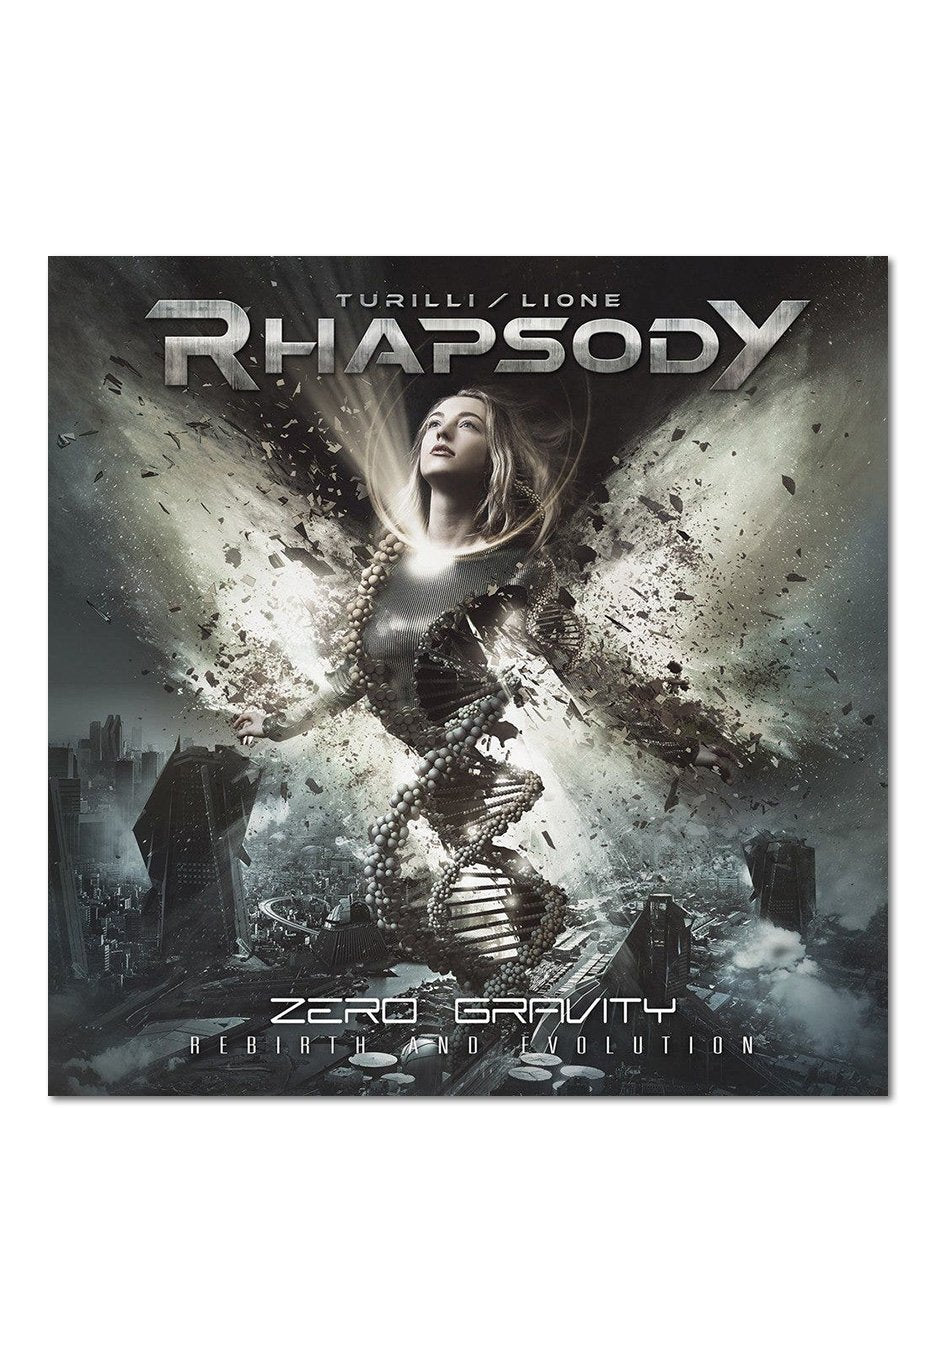 Rhapsody, Turilli / Lione - Zero Gravity (Rebirth And Evolution) - CD